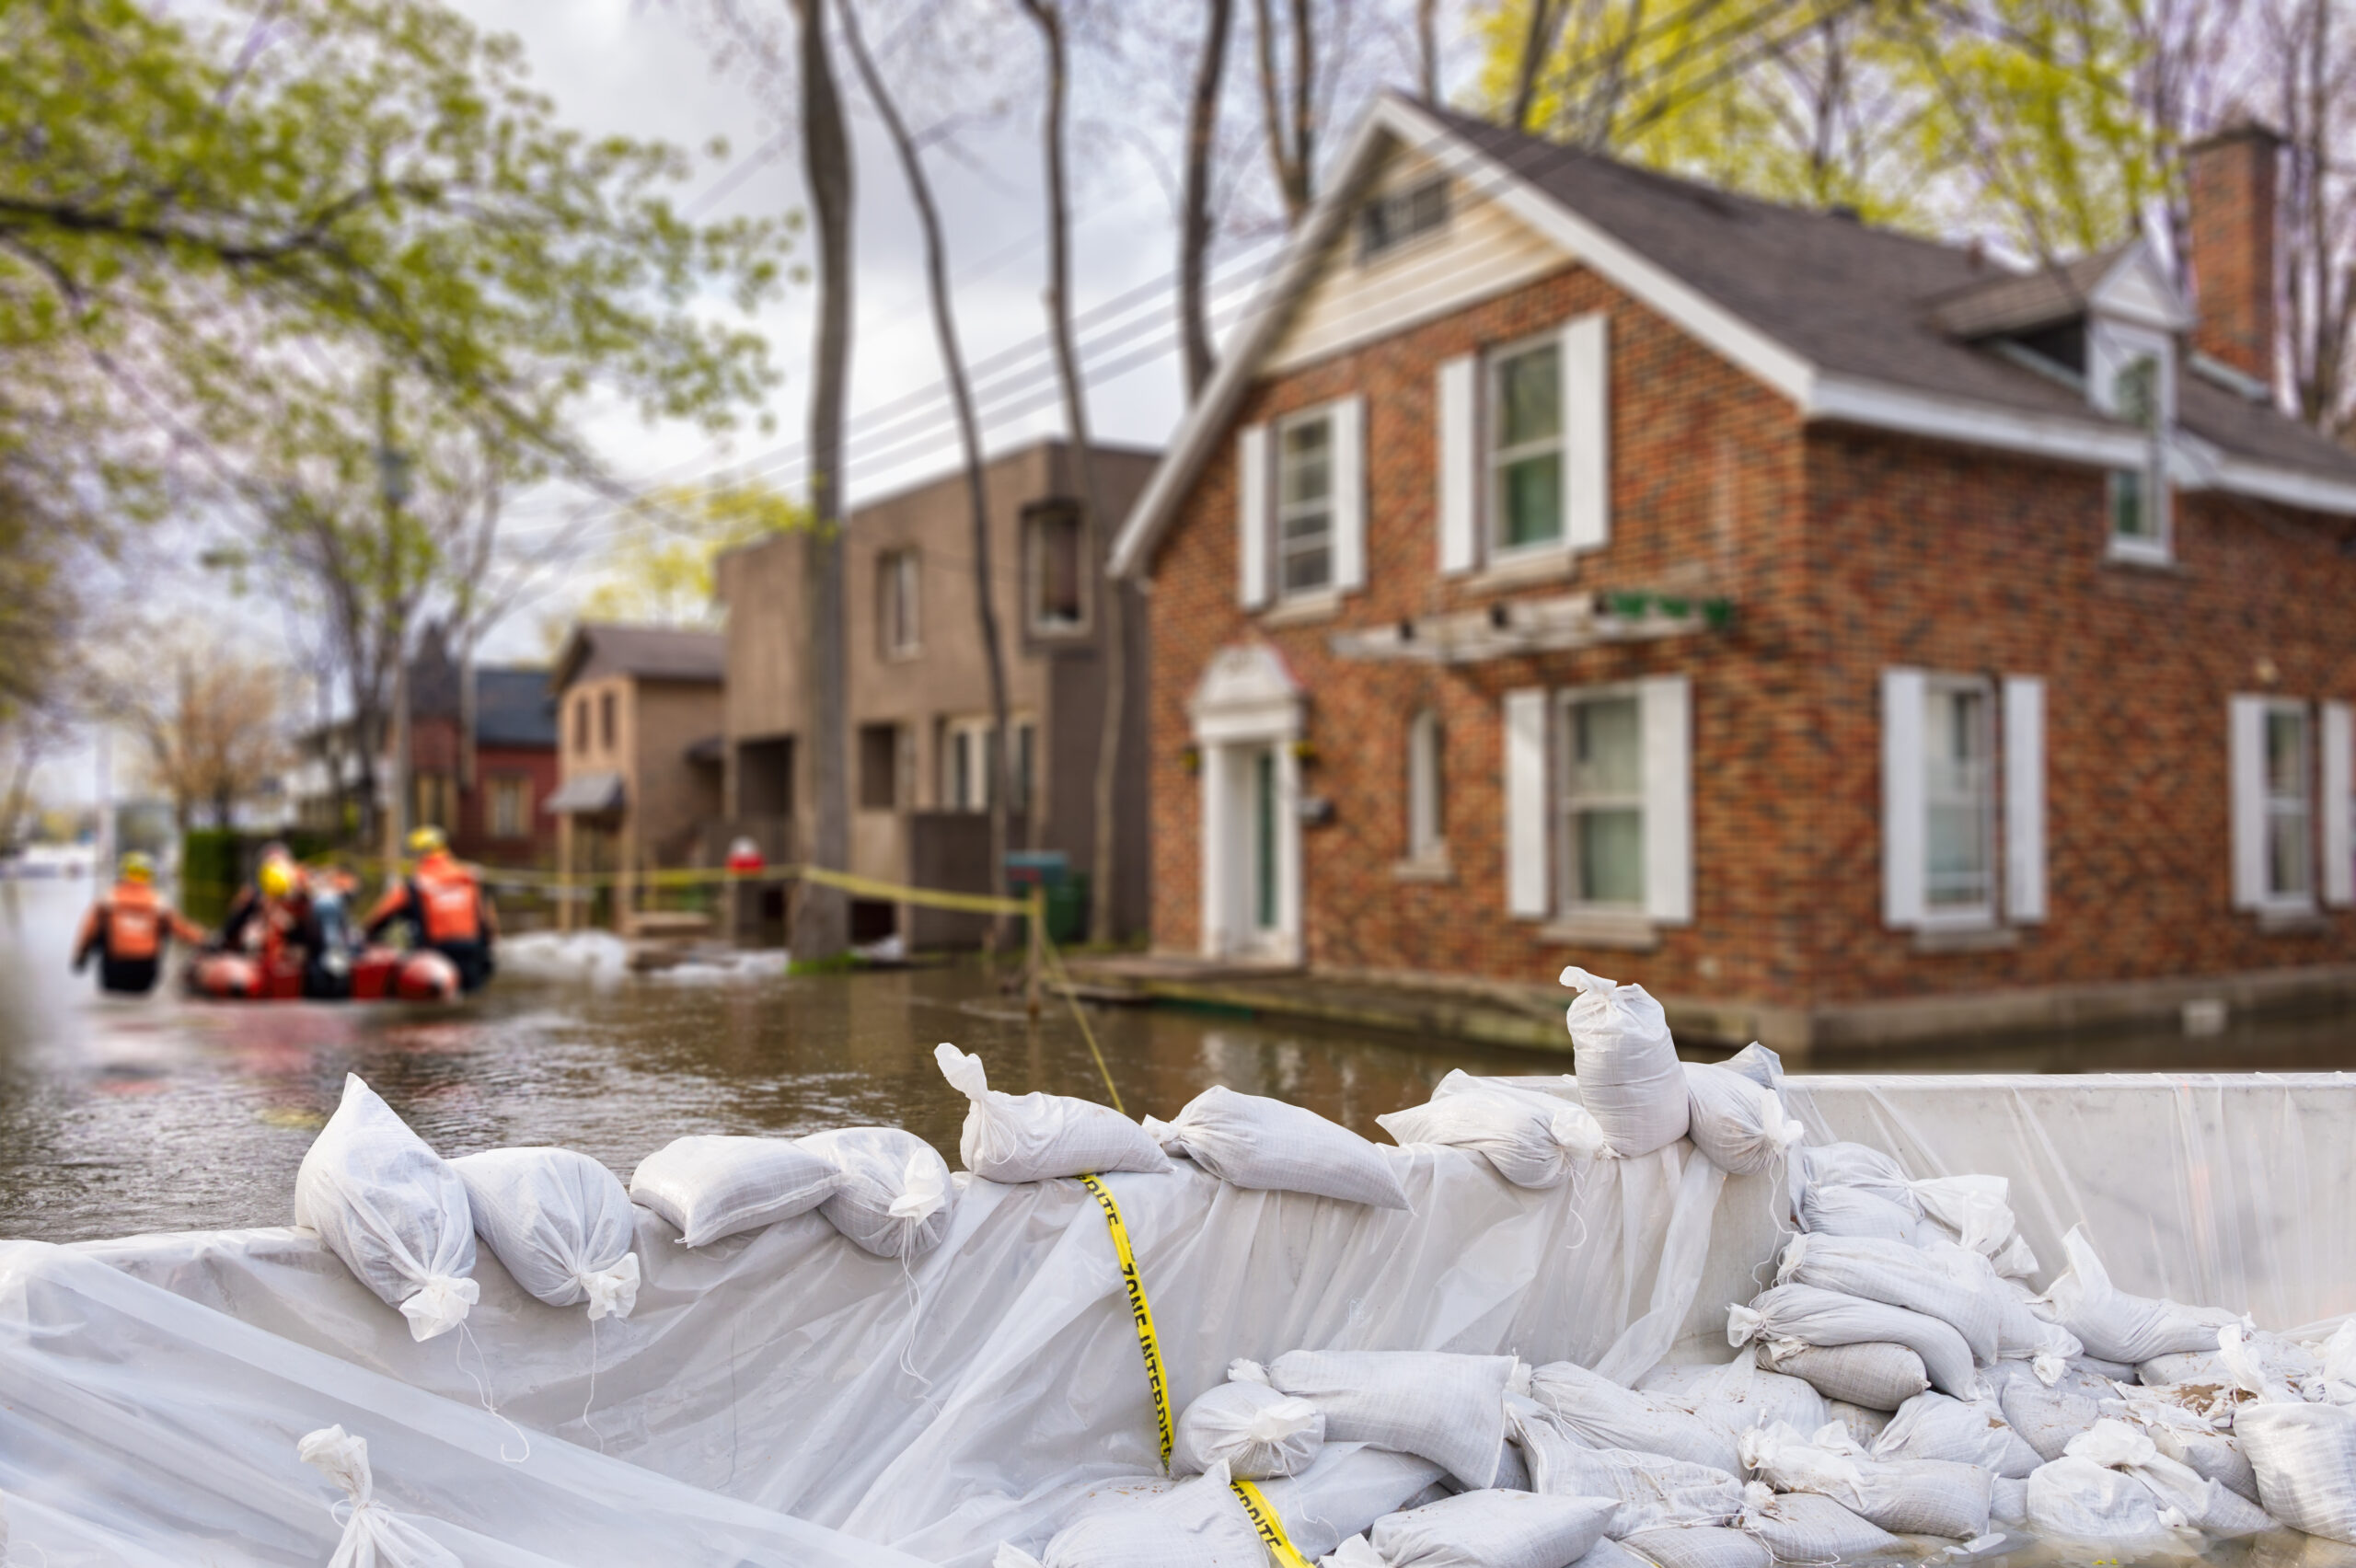 Flood Damage Insurance